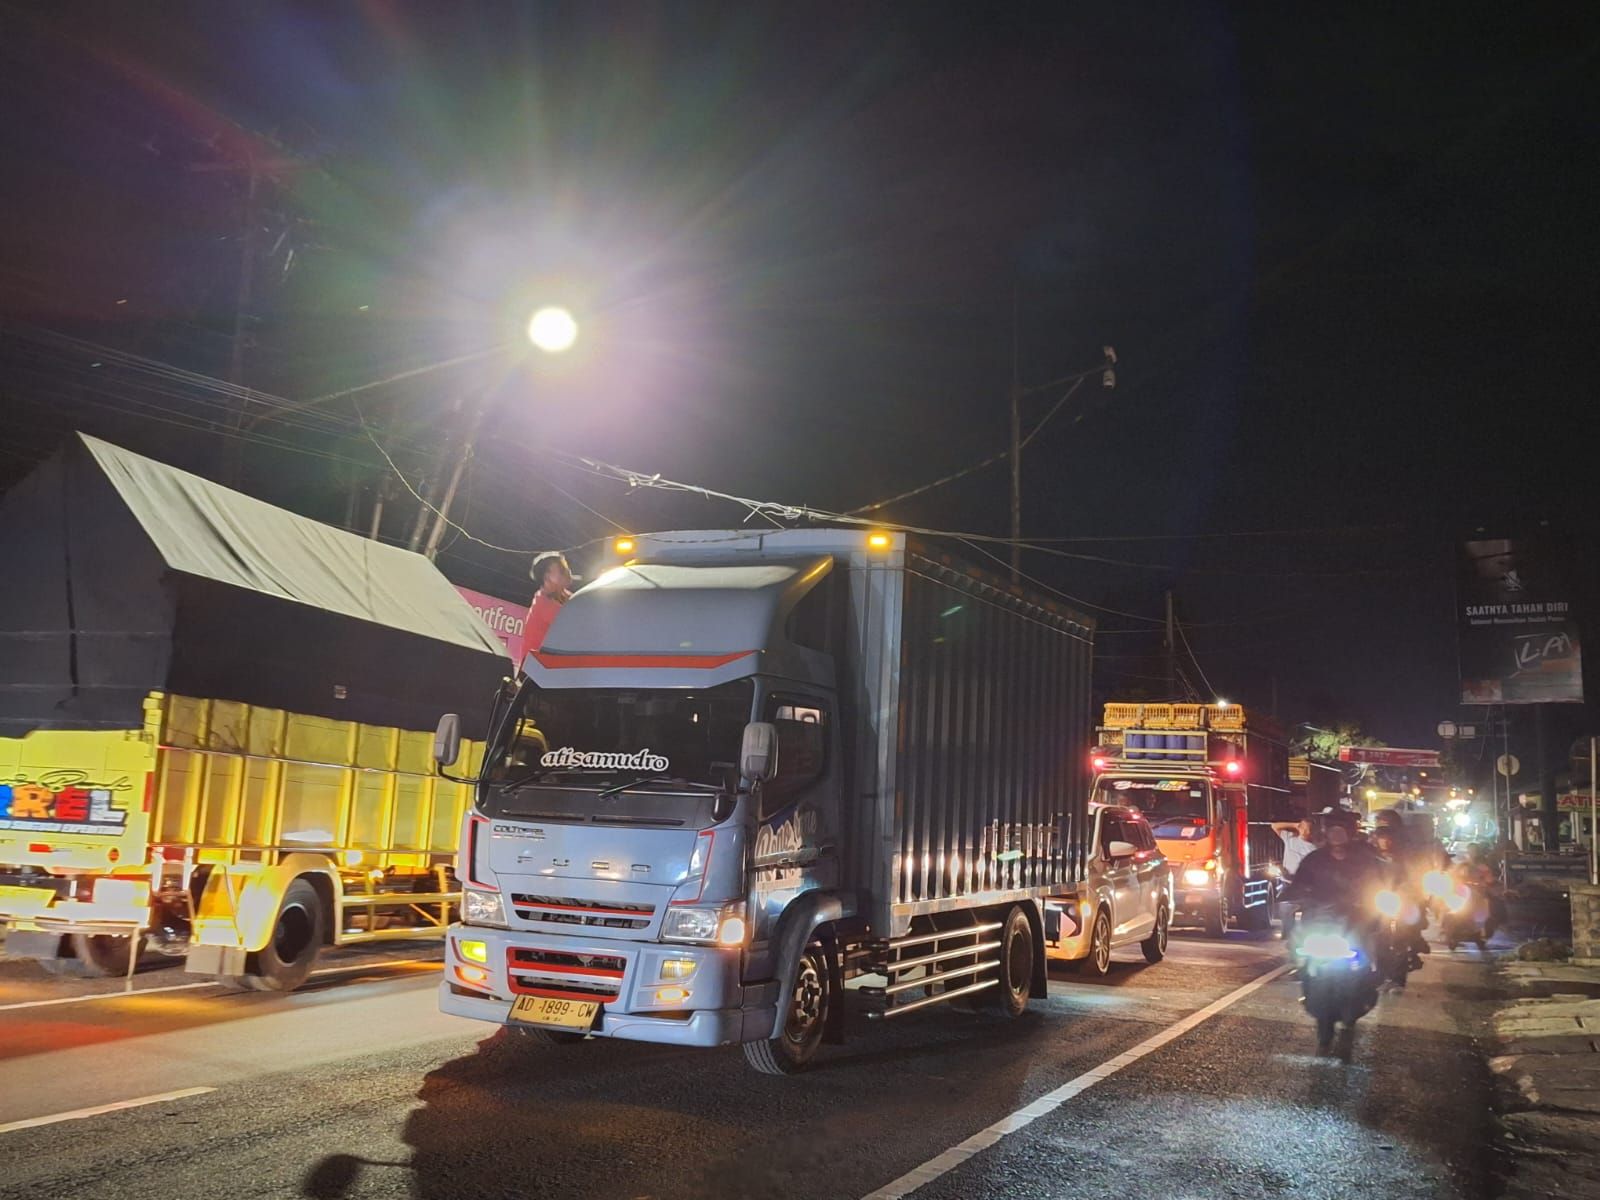 Kondisi jalan raya nasional saat sebuah truk berusaha menghindari kabel yang menjuntai ke jalan akibat tiang listrik di jalan pasar Sindangkasih jatuh melintang ke jalan.